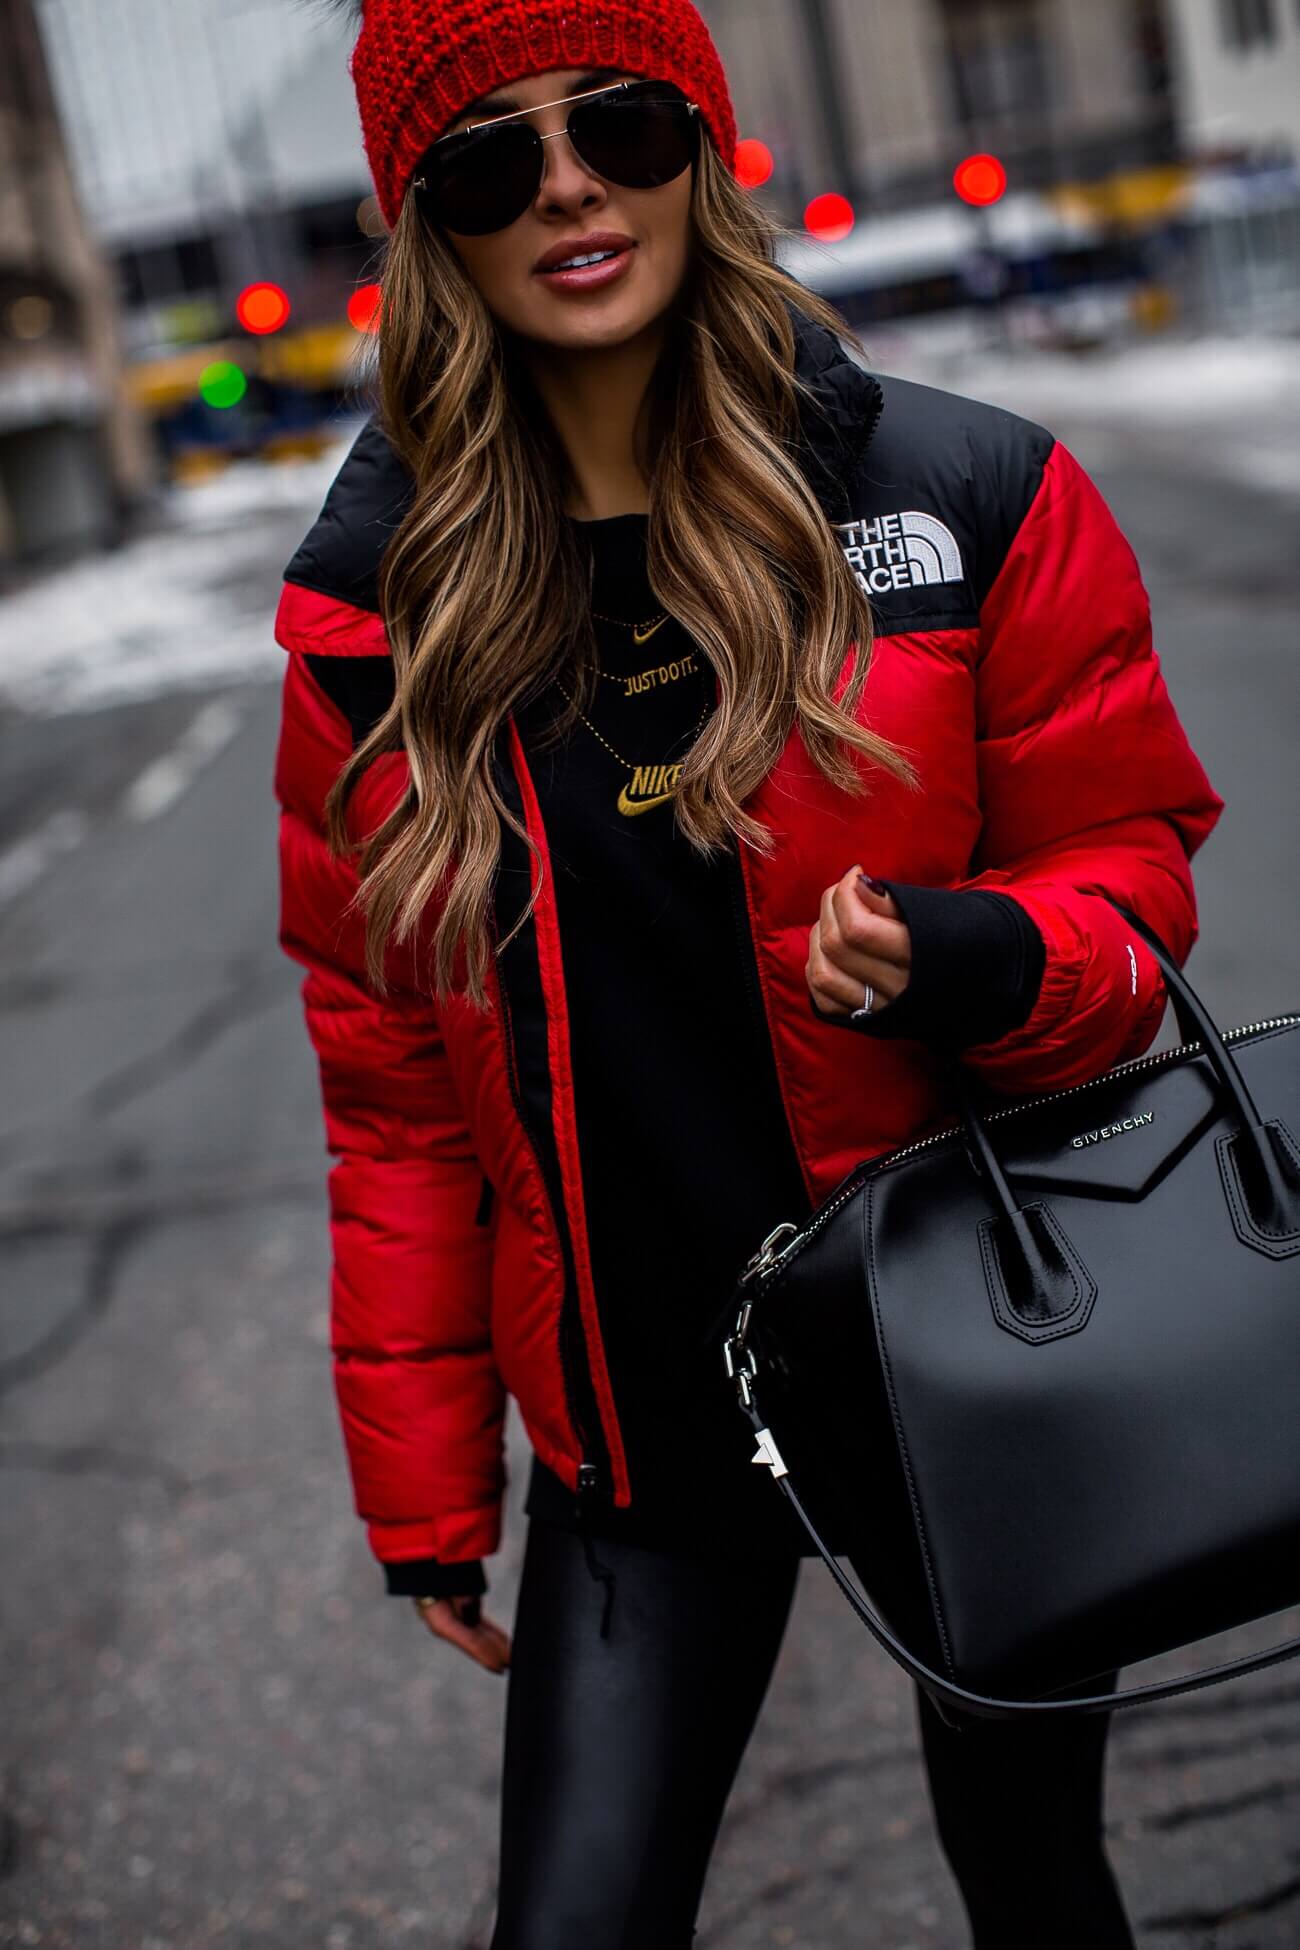 mia mia mine wearing a red north face jacket and a givenchy antigona bag